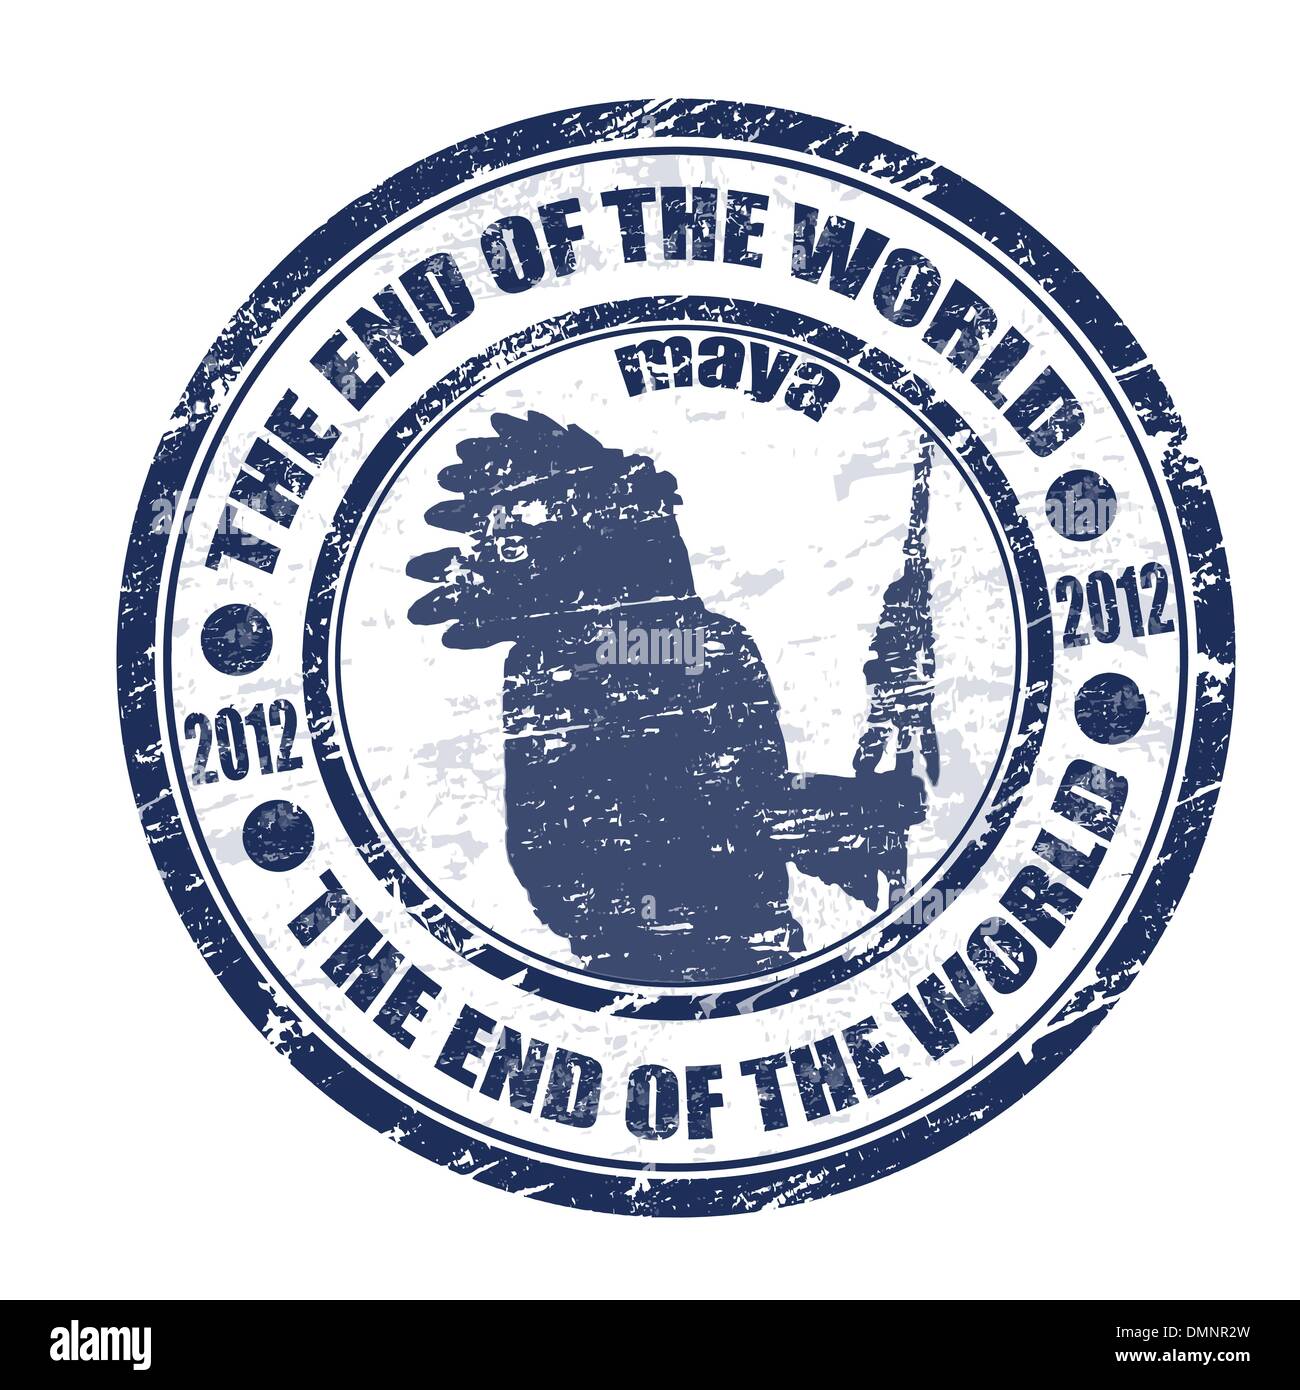 La fin du monde stamp Illustration de Vecteur